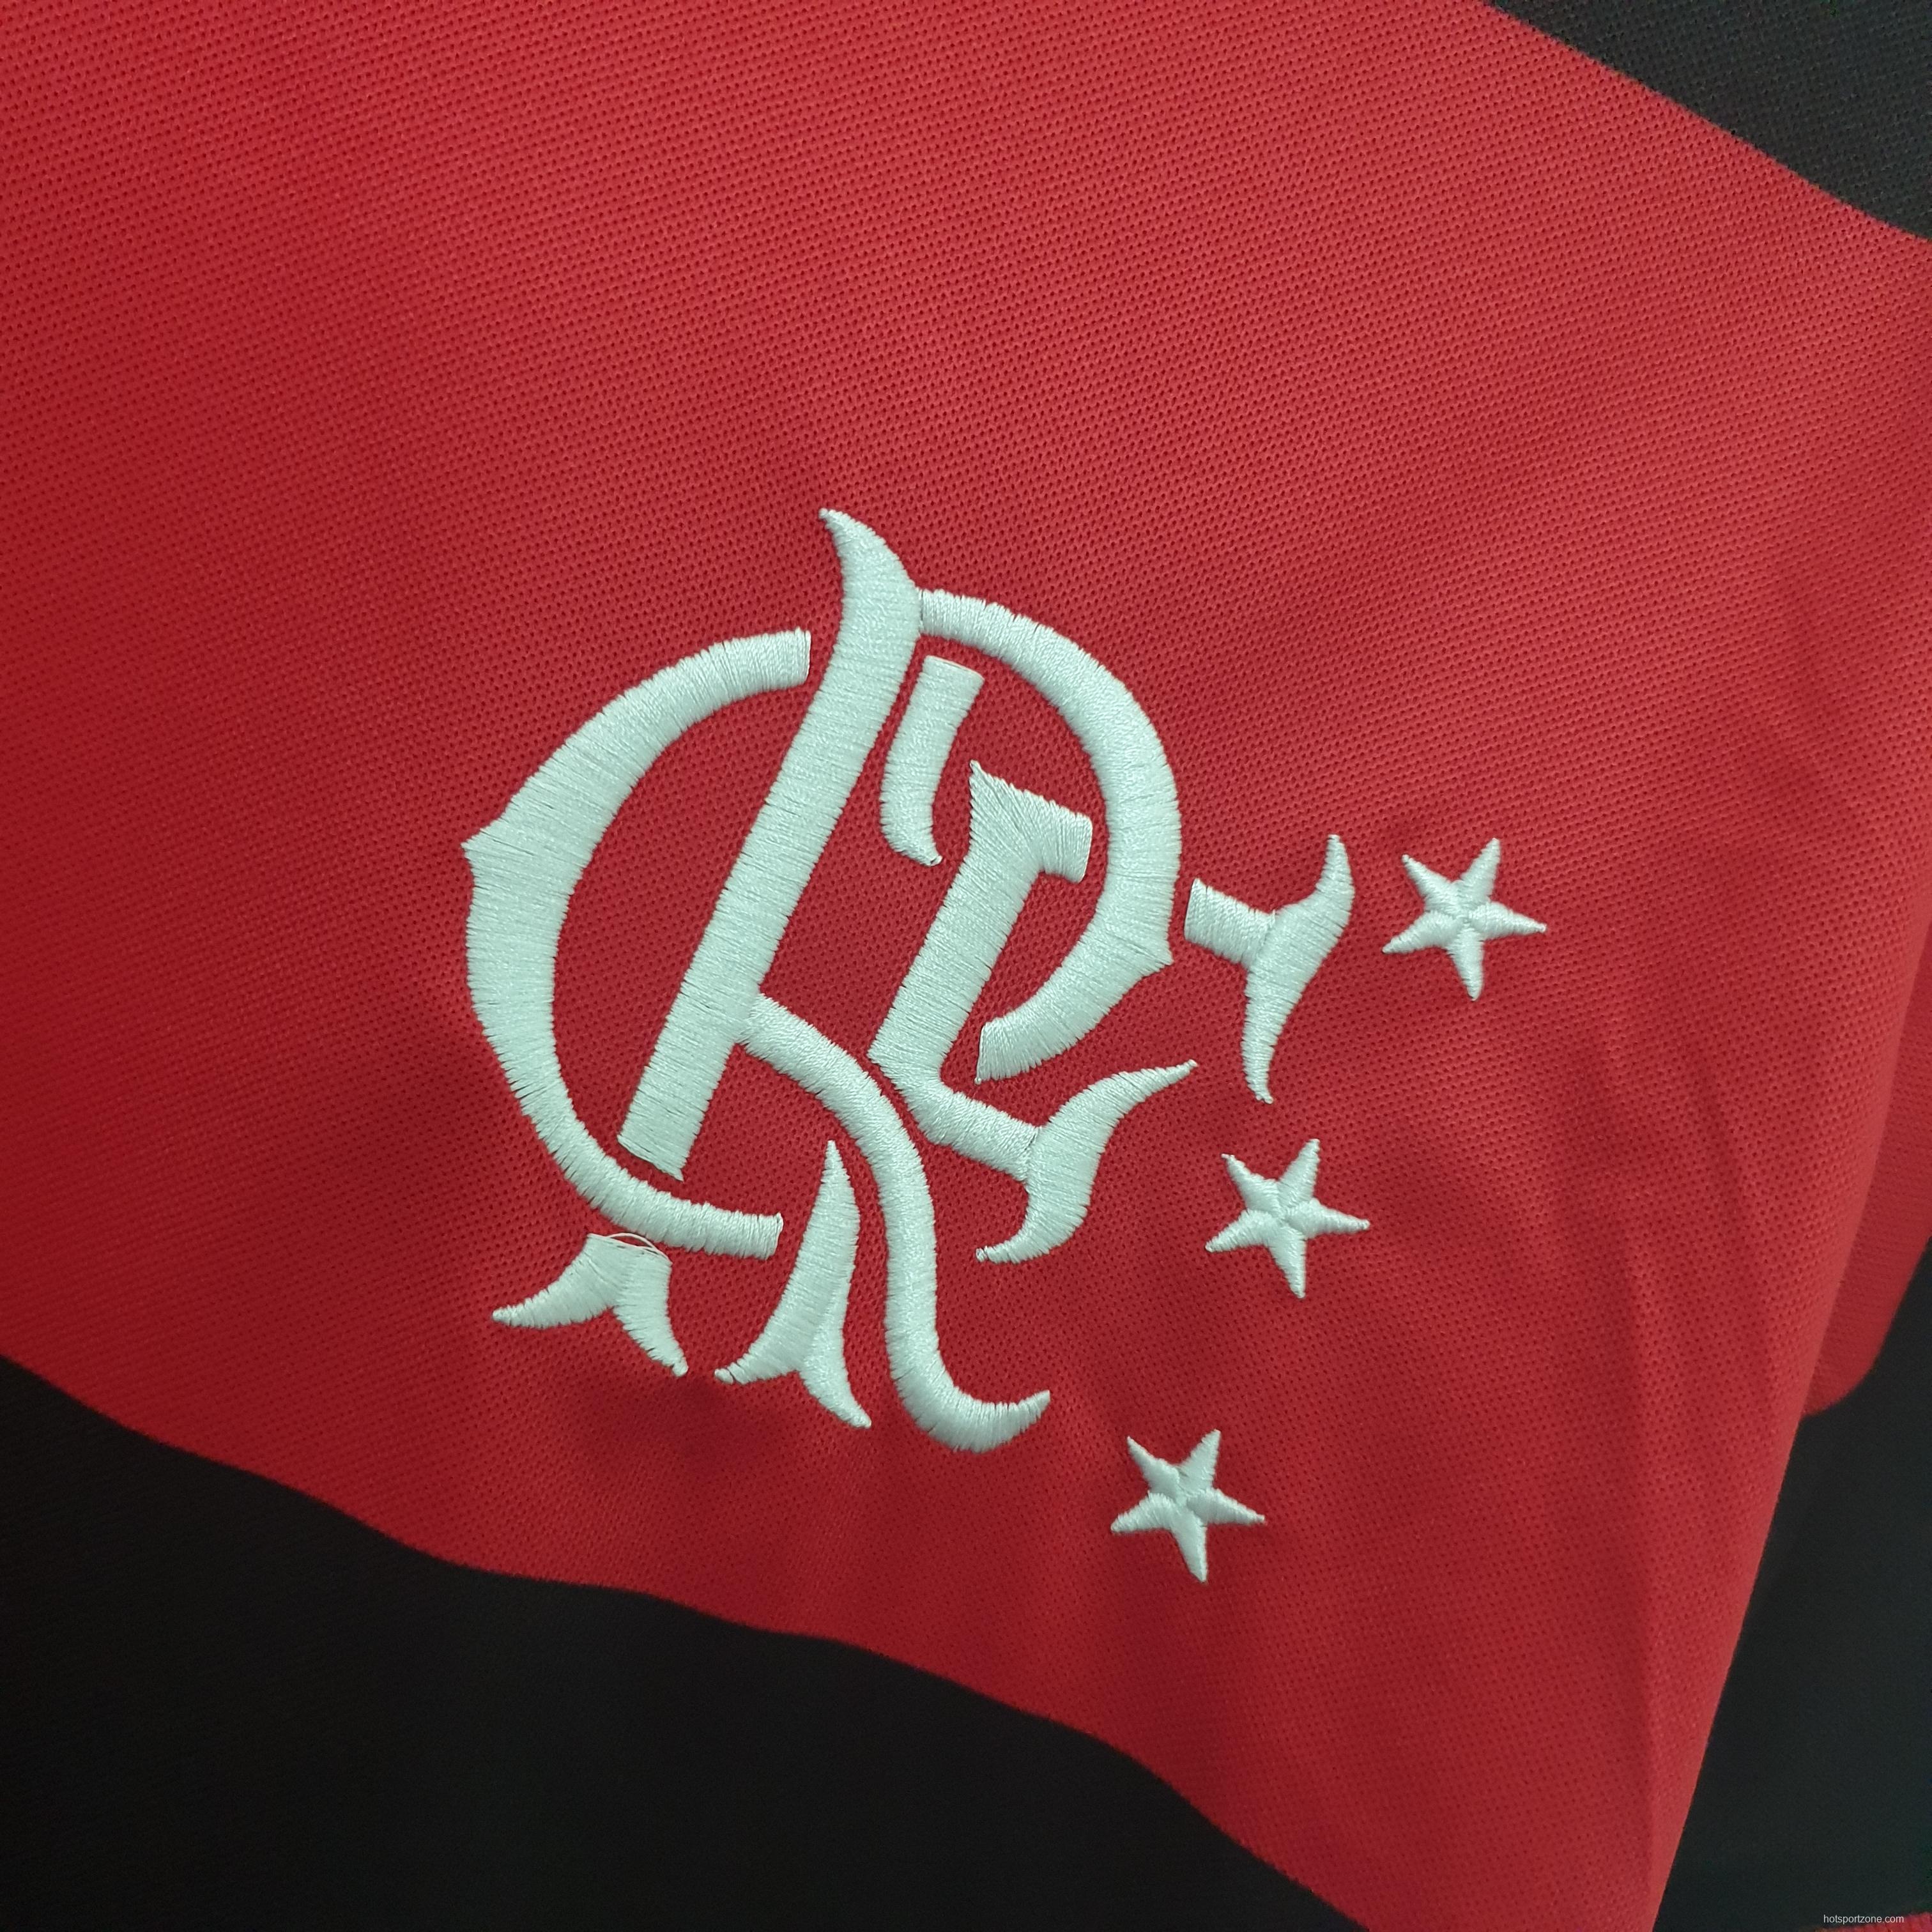 Flamengo 1982 retro shirt home Soccer Jersey